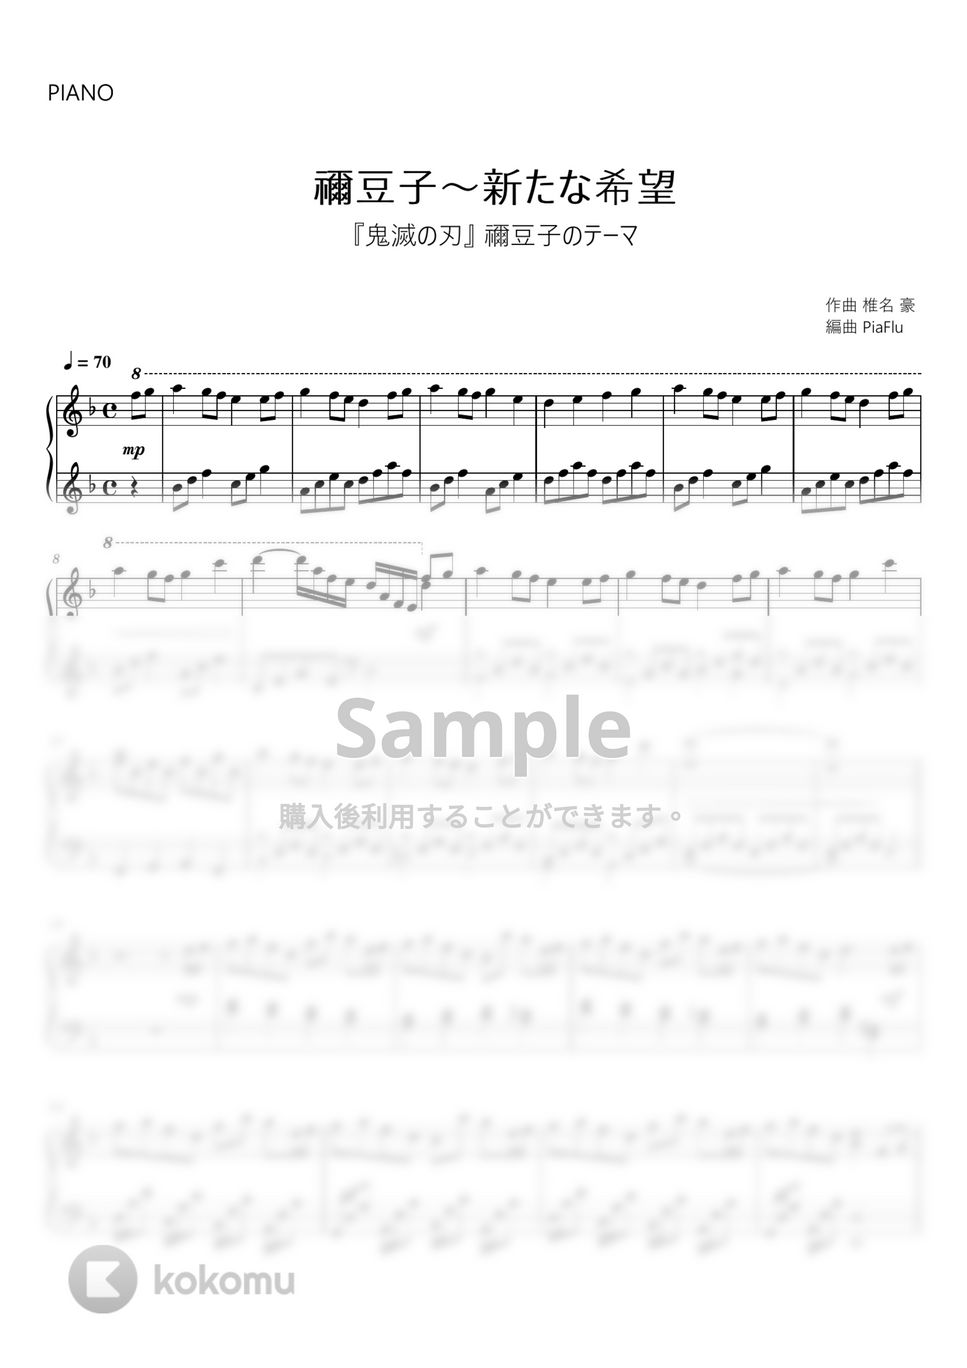 『鬼滅の刃』禰豆子のテーマ - 禰豆子～新たな希望 (ピアノ) by PiaFlu